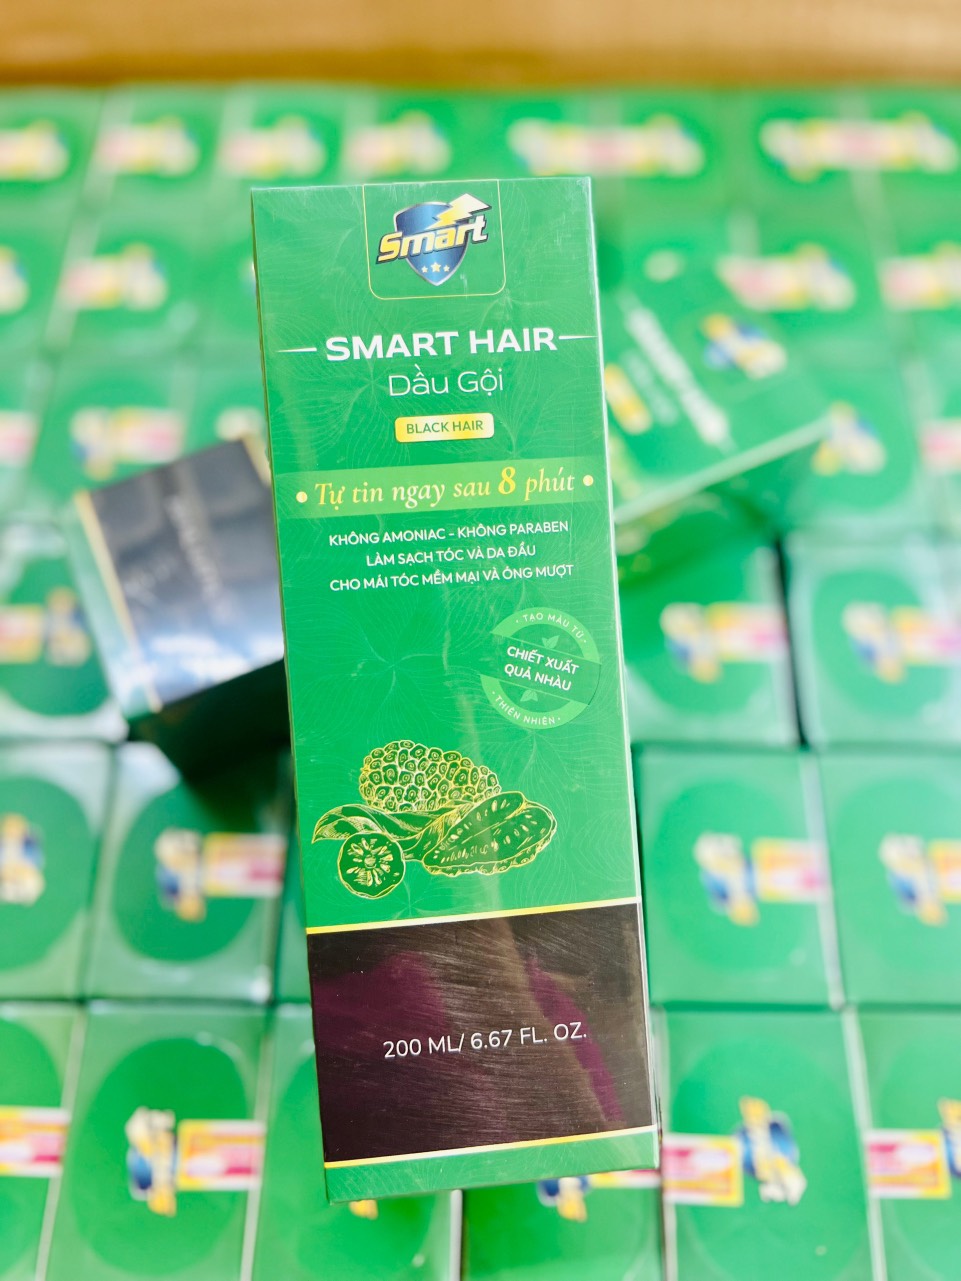 Dầu gội - Nhuộm tóc PHỦ BẠC SMART HAIR - Hai màu Đen và Nâu - Hương thơm dịu nhẹ và màu tự nhiên